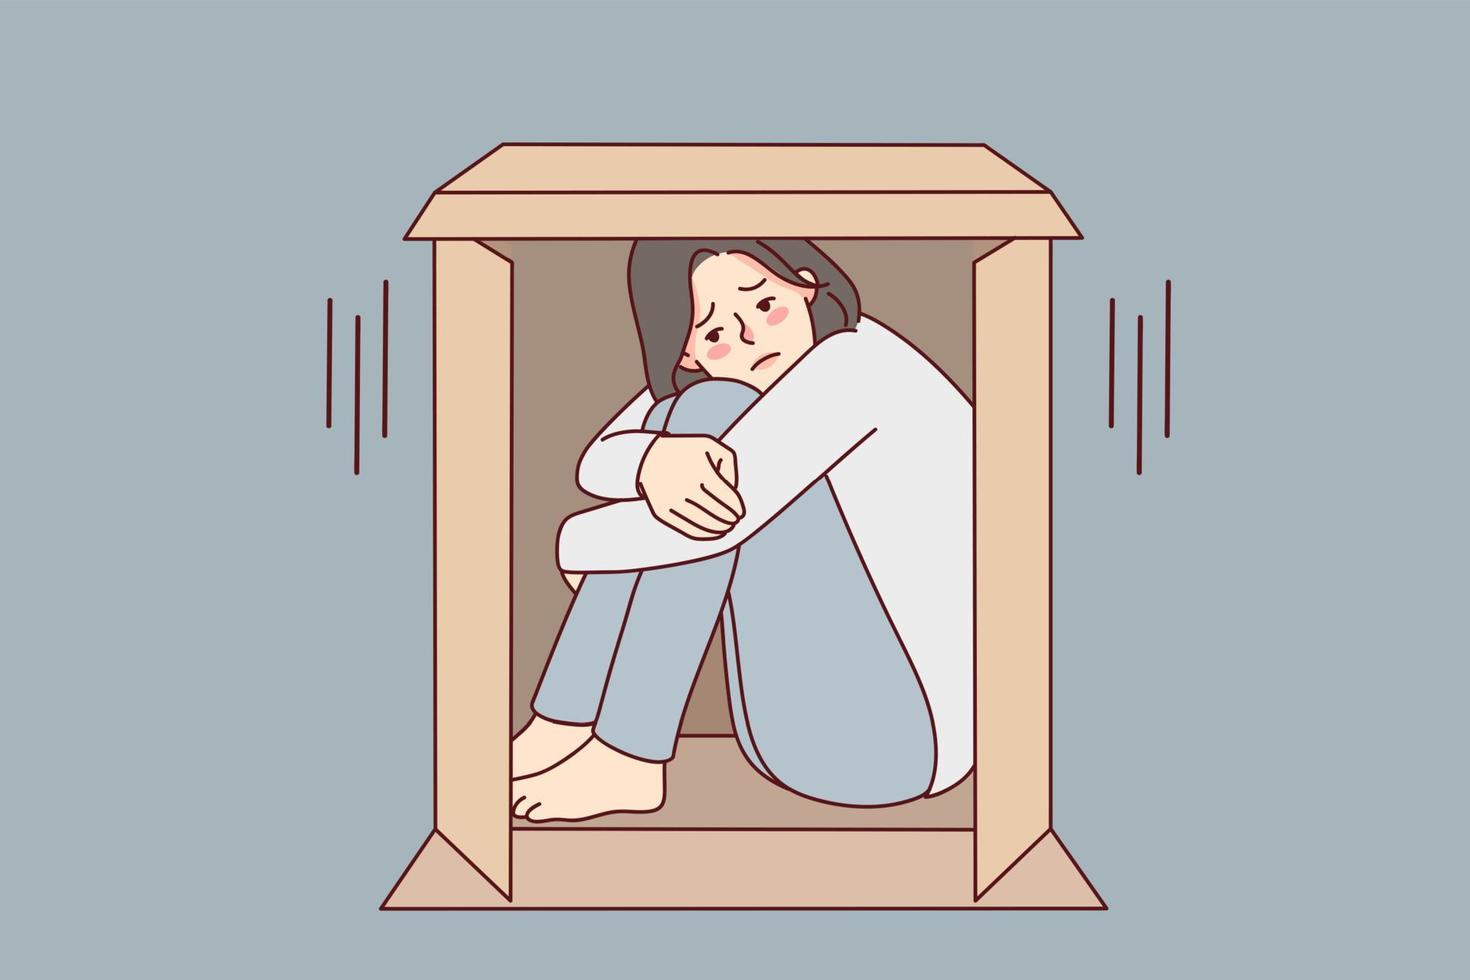 infeliz joven mujer sentar en caja sufrir desde sociofobia trastornado niña esconder en cartulina paquete o empaquetar dificil desde soledad o soledad. vector ilustración.